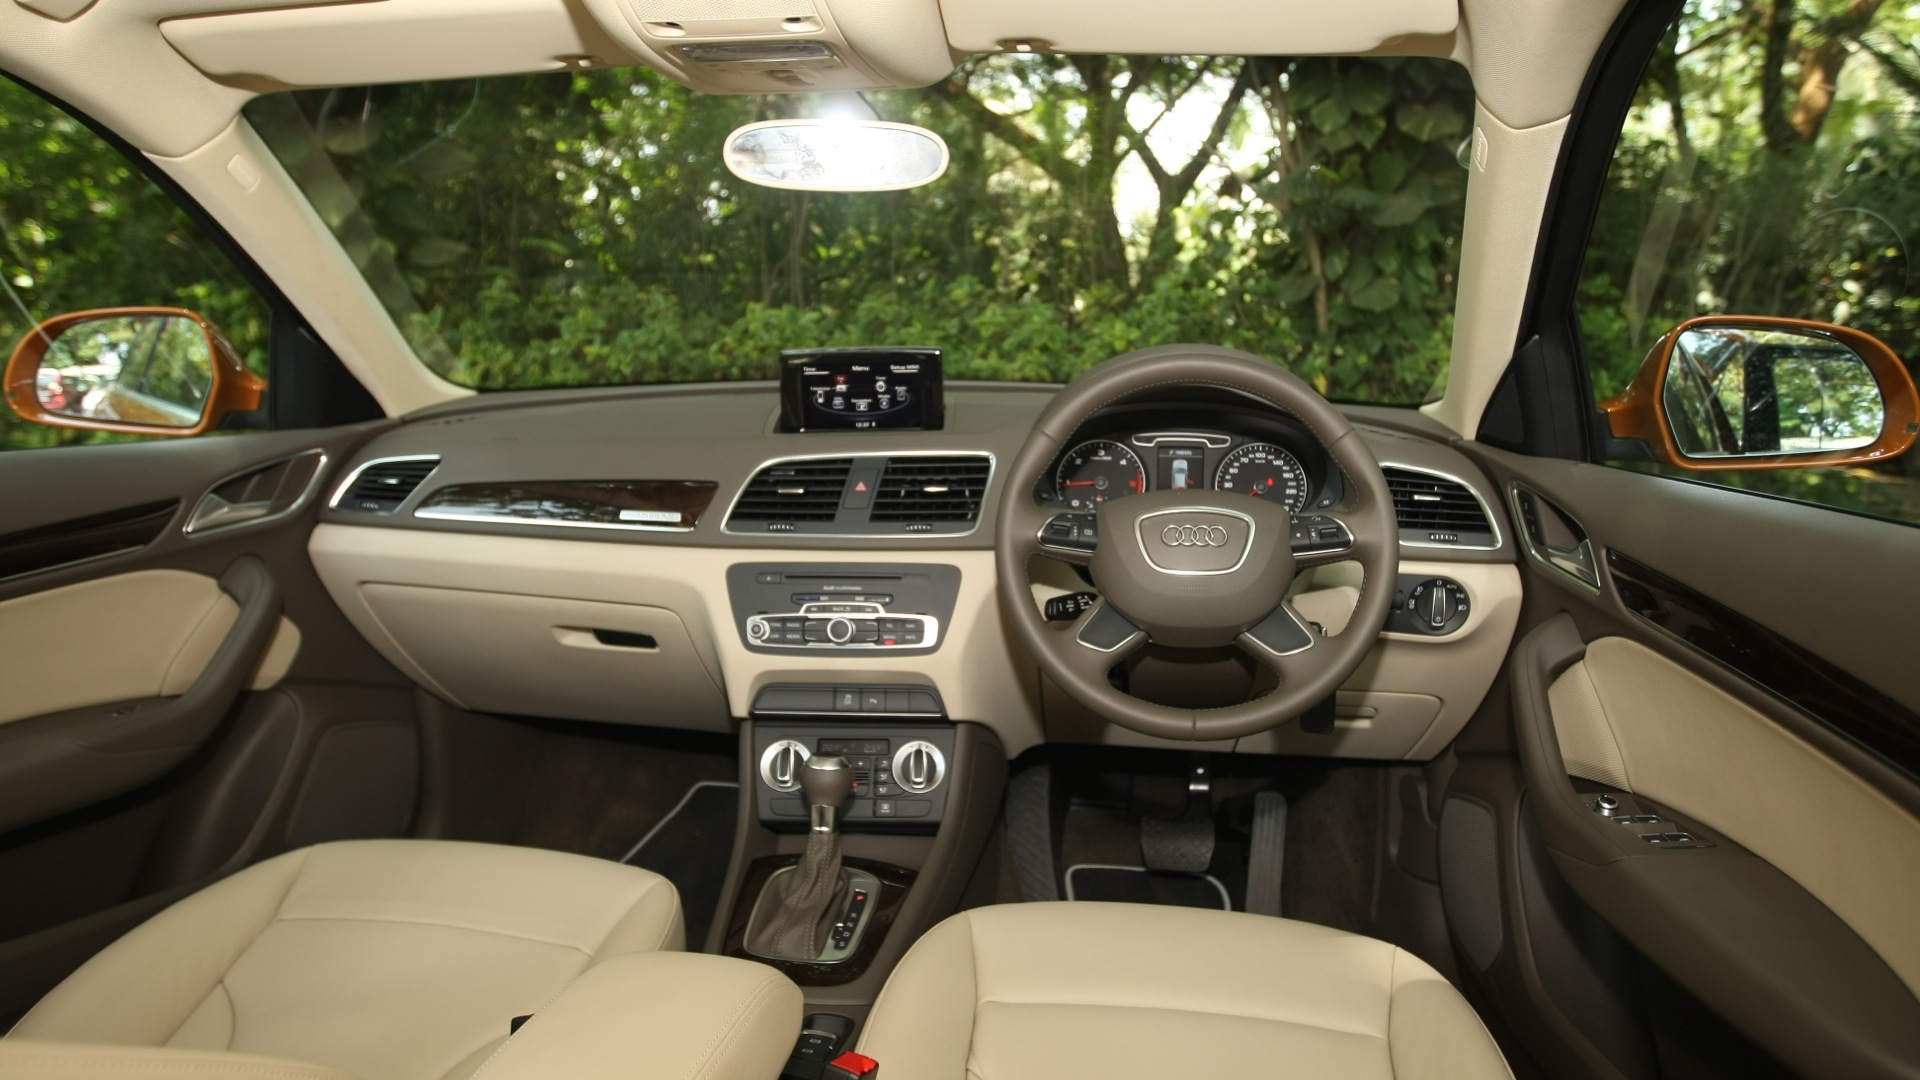 Audi-Q3-2012-2-0-TFSI-Quattro-Interior